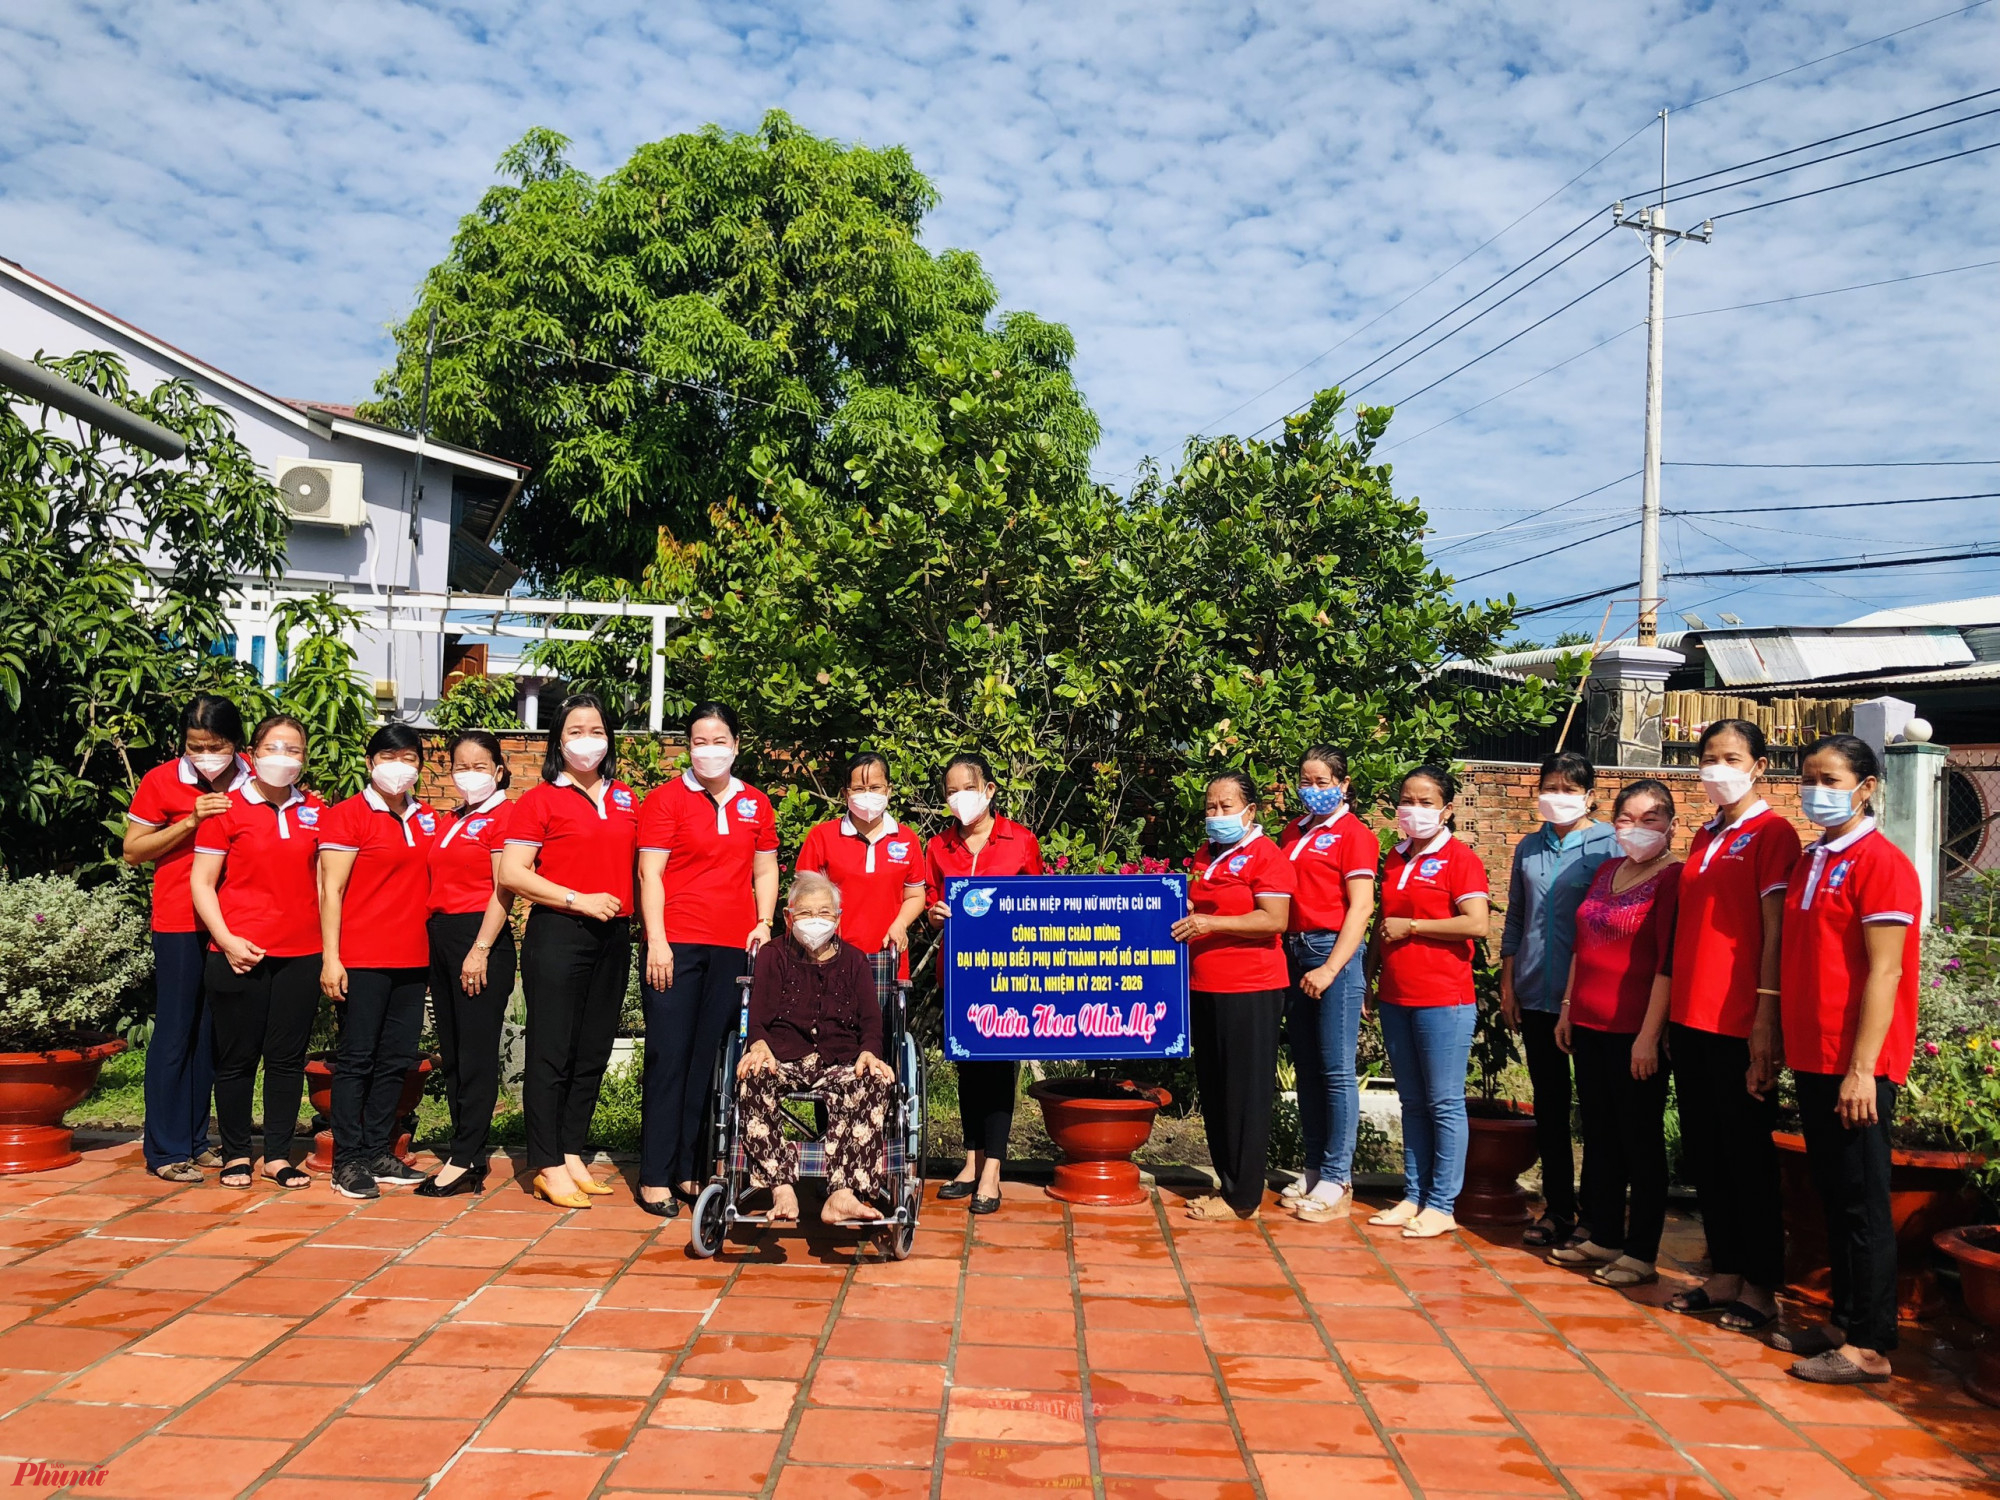 Cán bộ hội viên phụ nữ huyện Củ Chỉ tổ chức công trình Vườn hoa nhà Mẹ, chào mừng Đại hội đại biểu Phụ nự TPHCM 